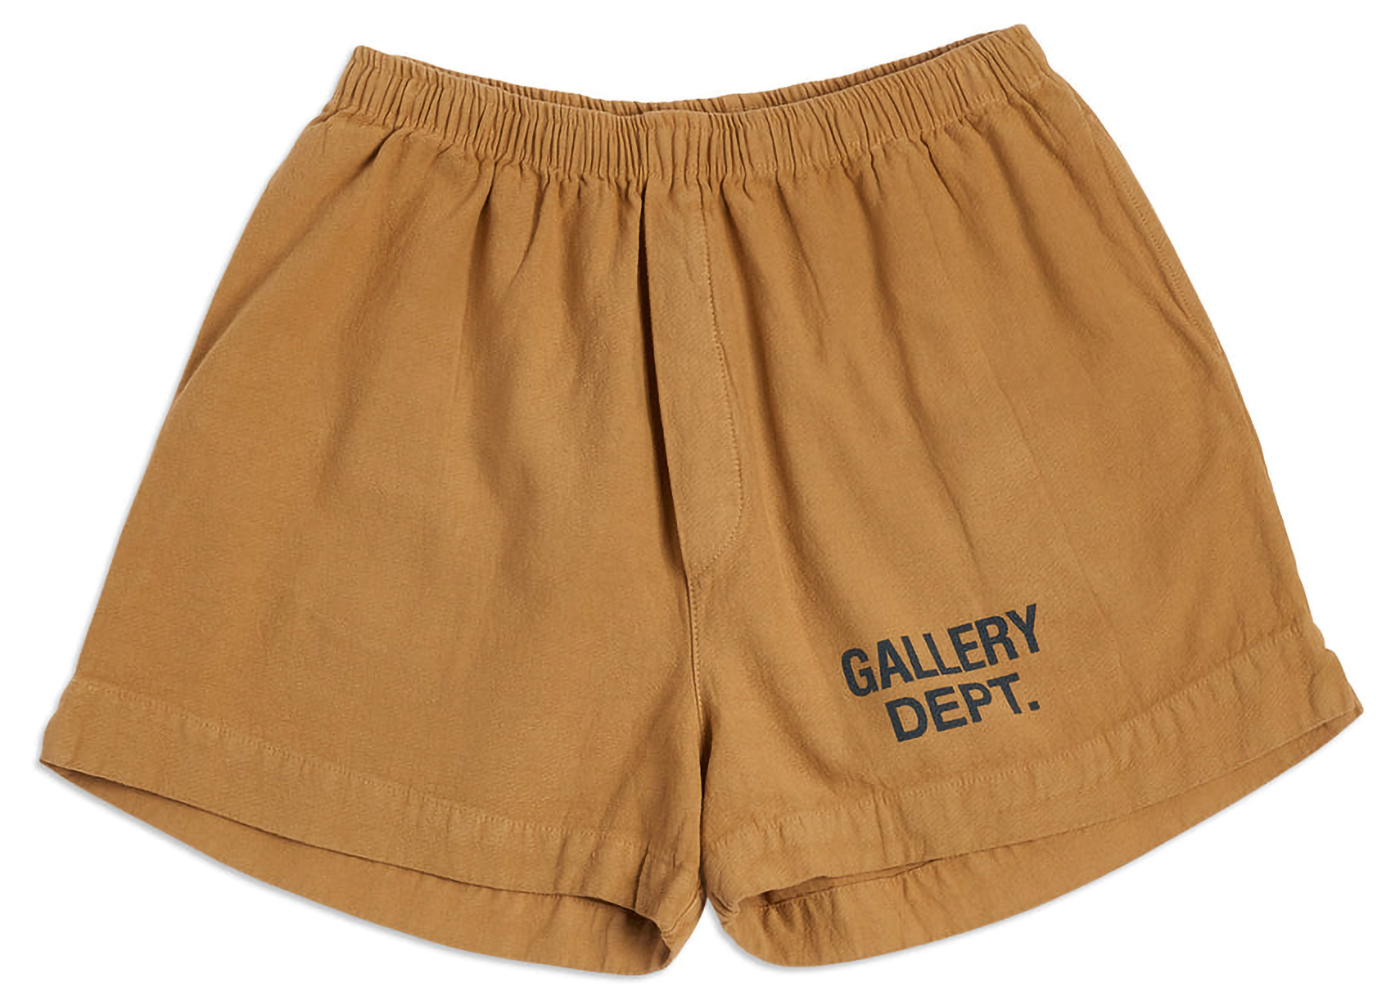 Gallery Dept. Zuma Shorts Tan メンズ - JP